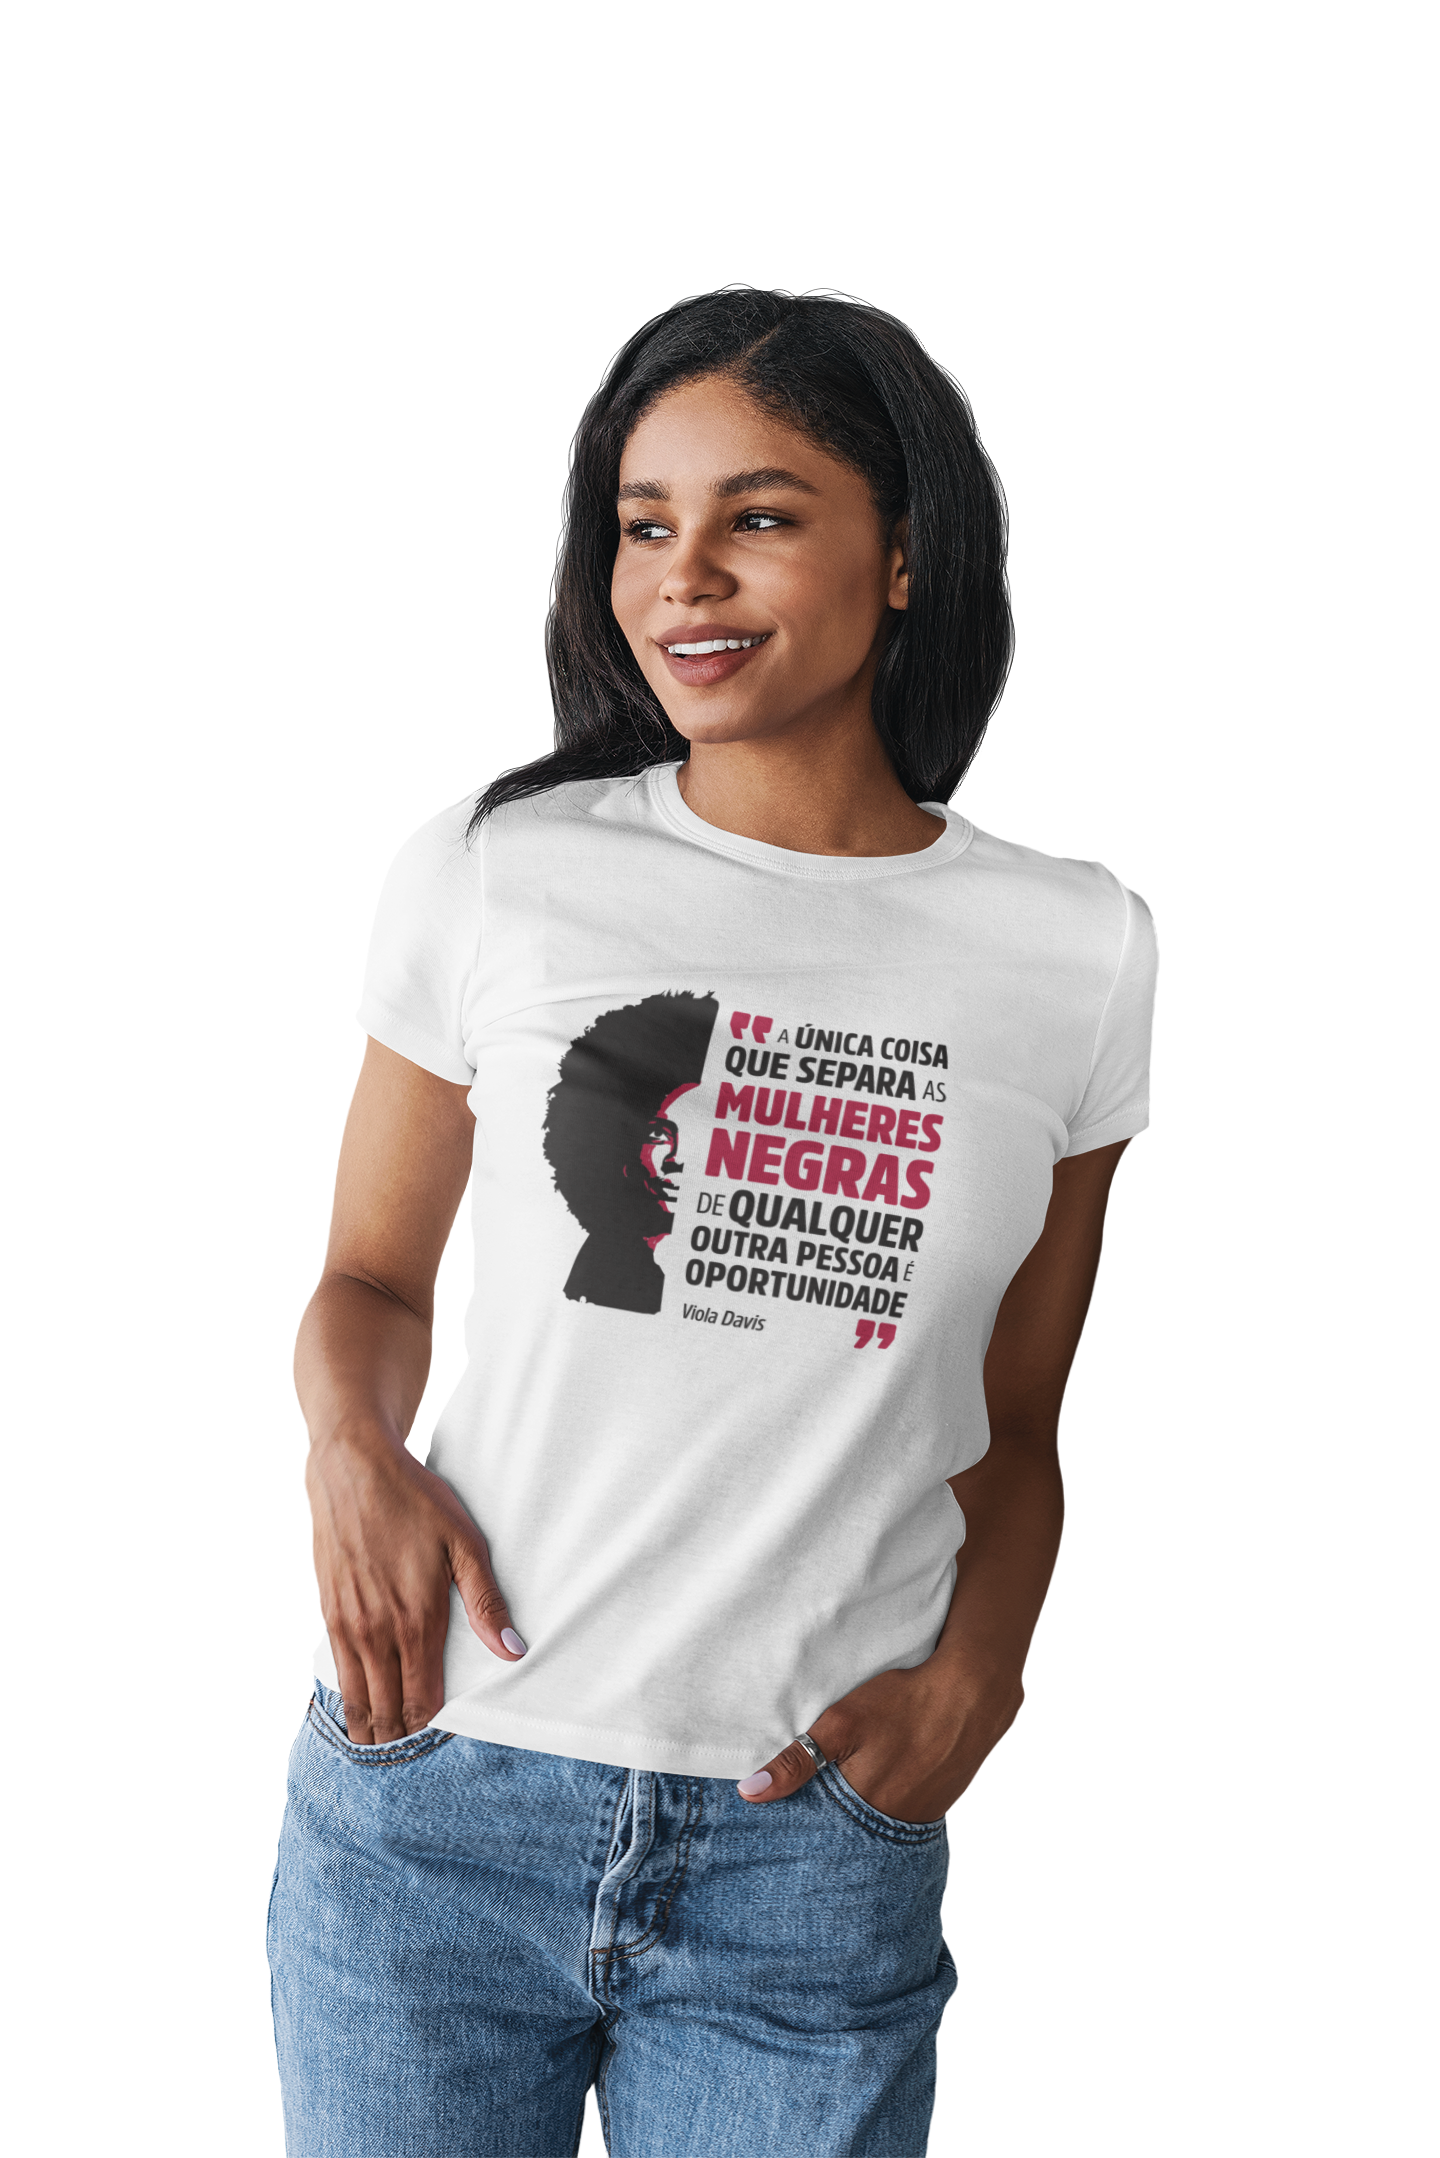 mulher negra vestindo a camiseta feminina branca com ilustração da Viola Davis e a frase "a única coisa que separa as mulheres negras de qualquer outra pessoa é oportunidade"